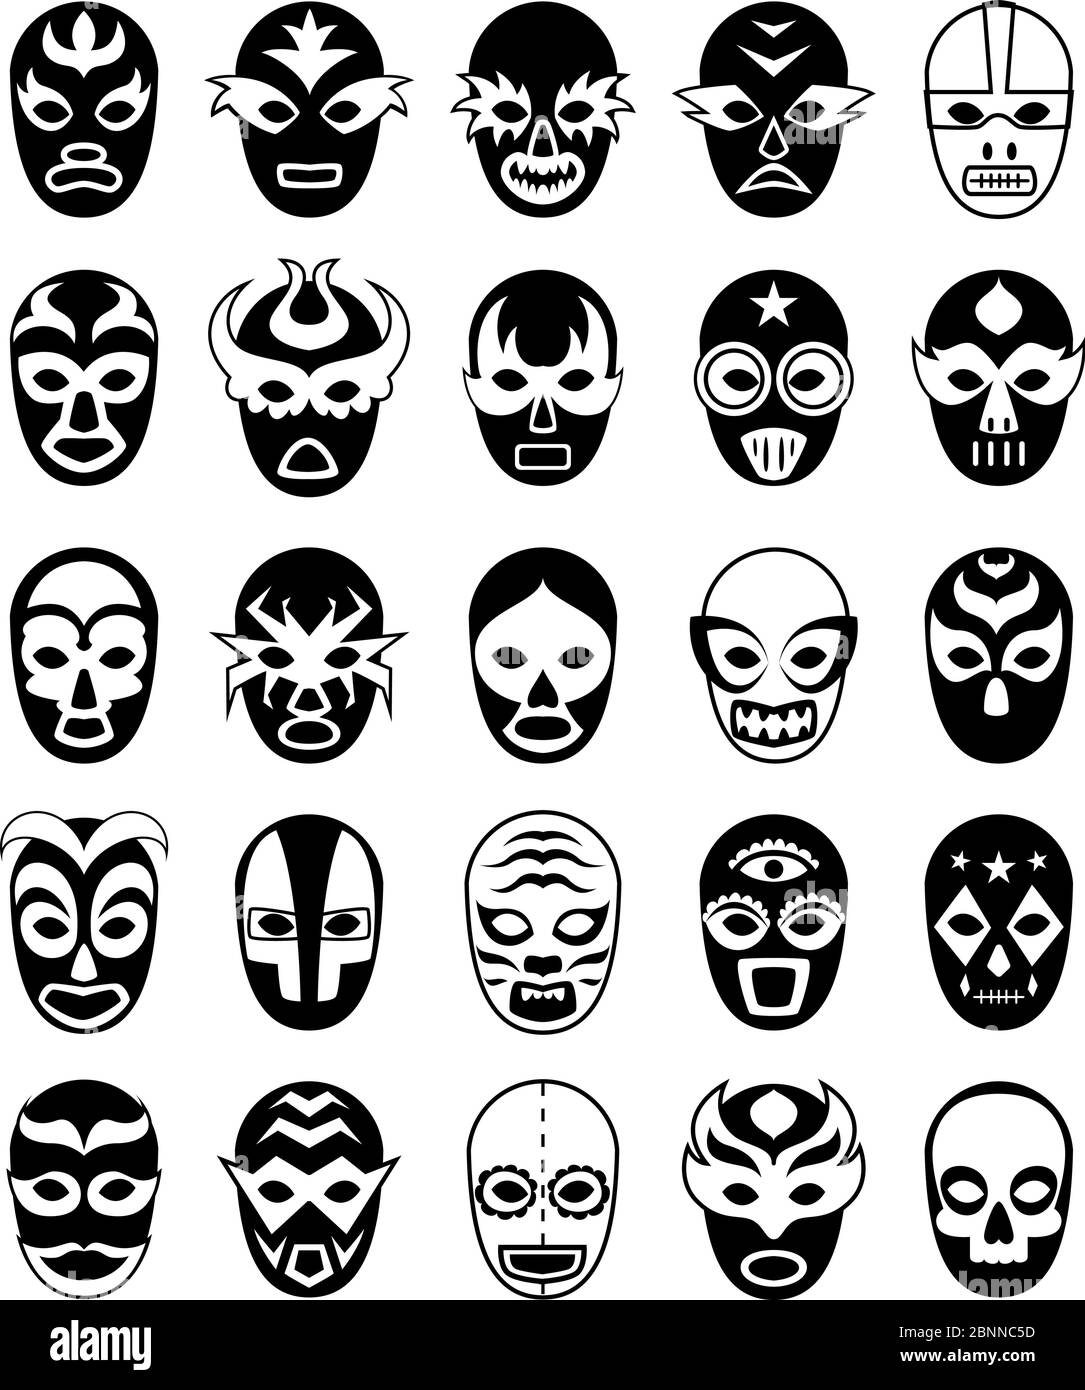 Masques de chasse. Silhouettes mexicaines de lucha libre de vecteur masqué luchador isolé Illustration de Vecteur